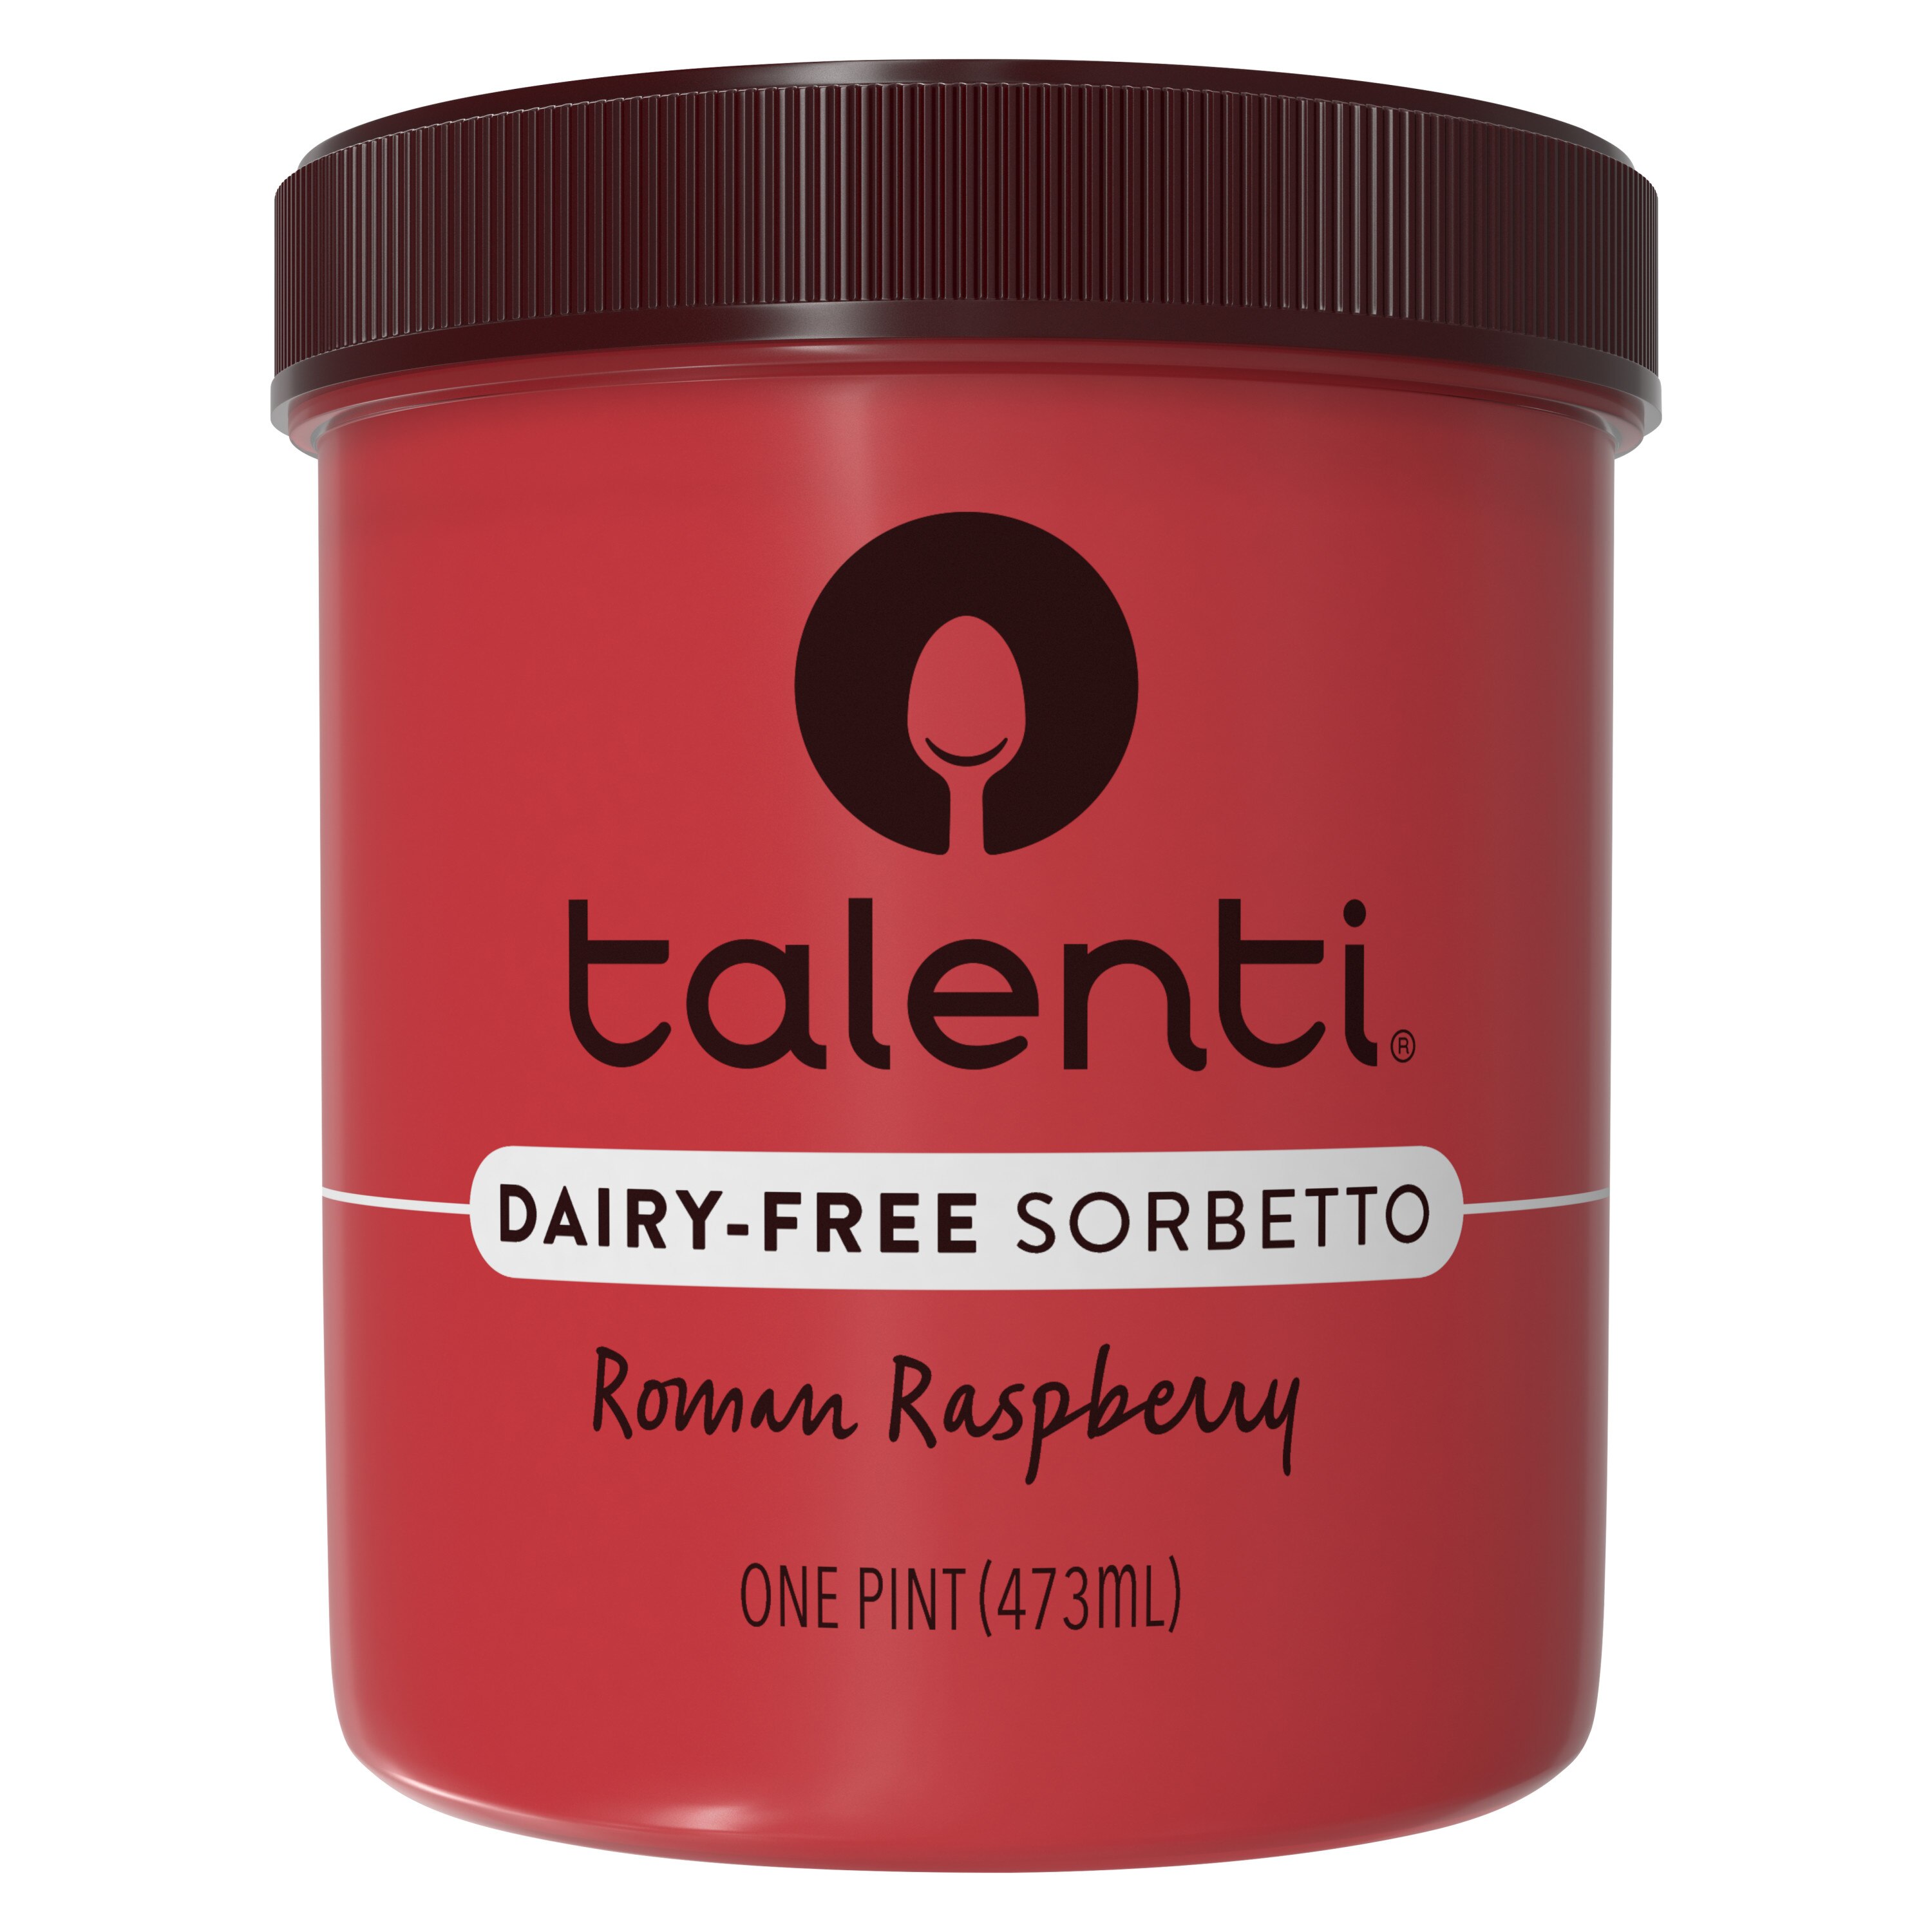 Talenti Gelato Roman Raspberry Sorbetto Review